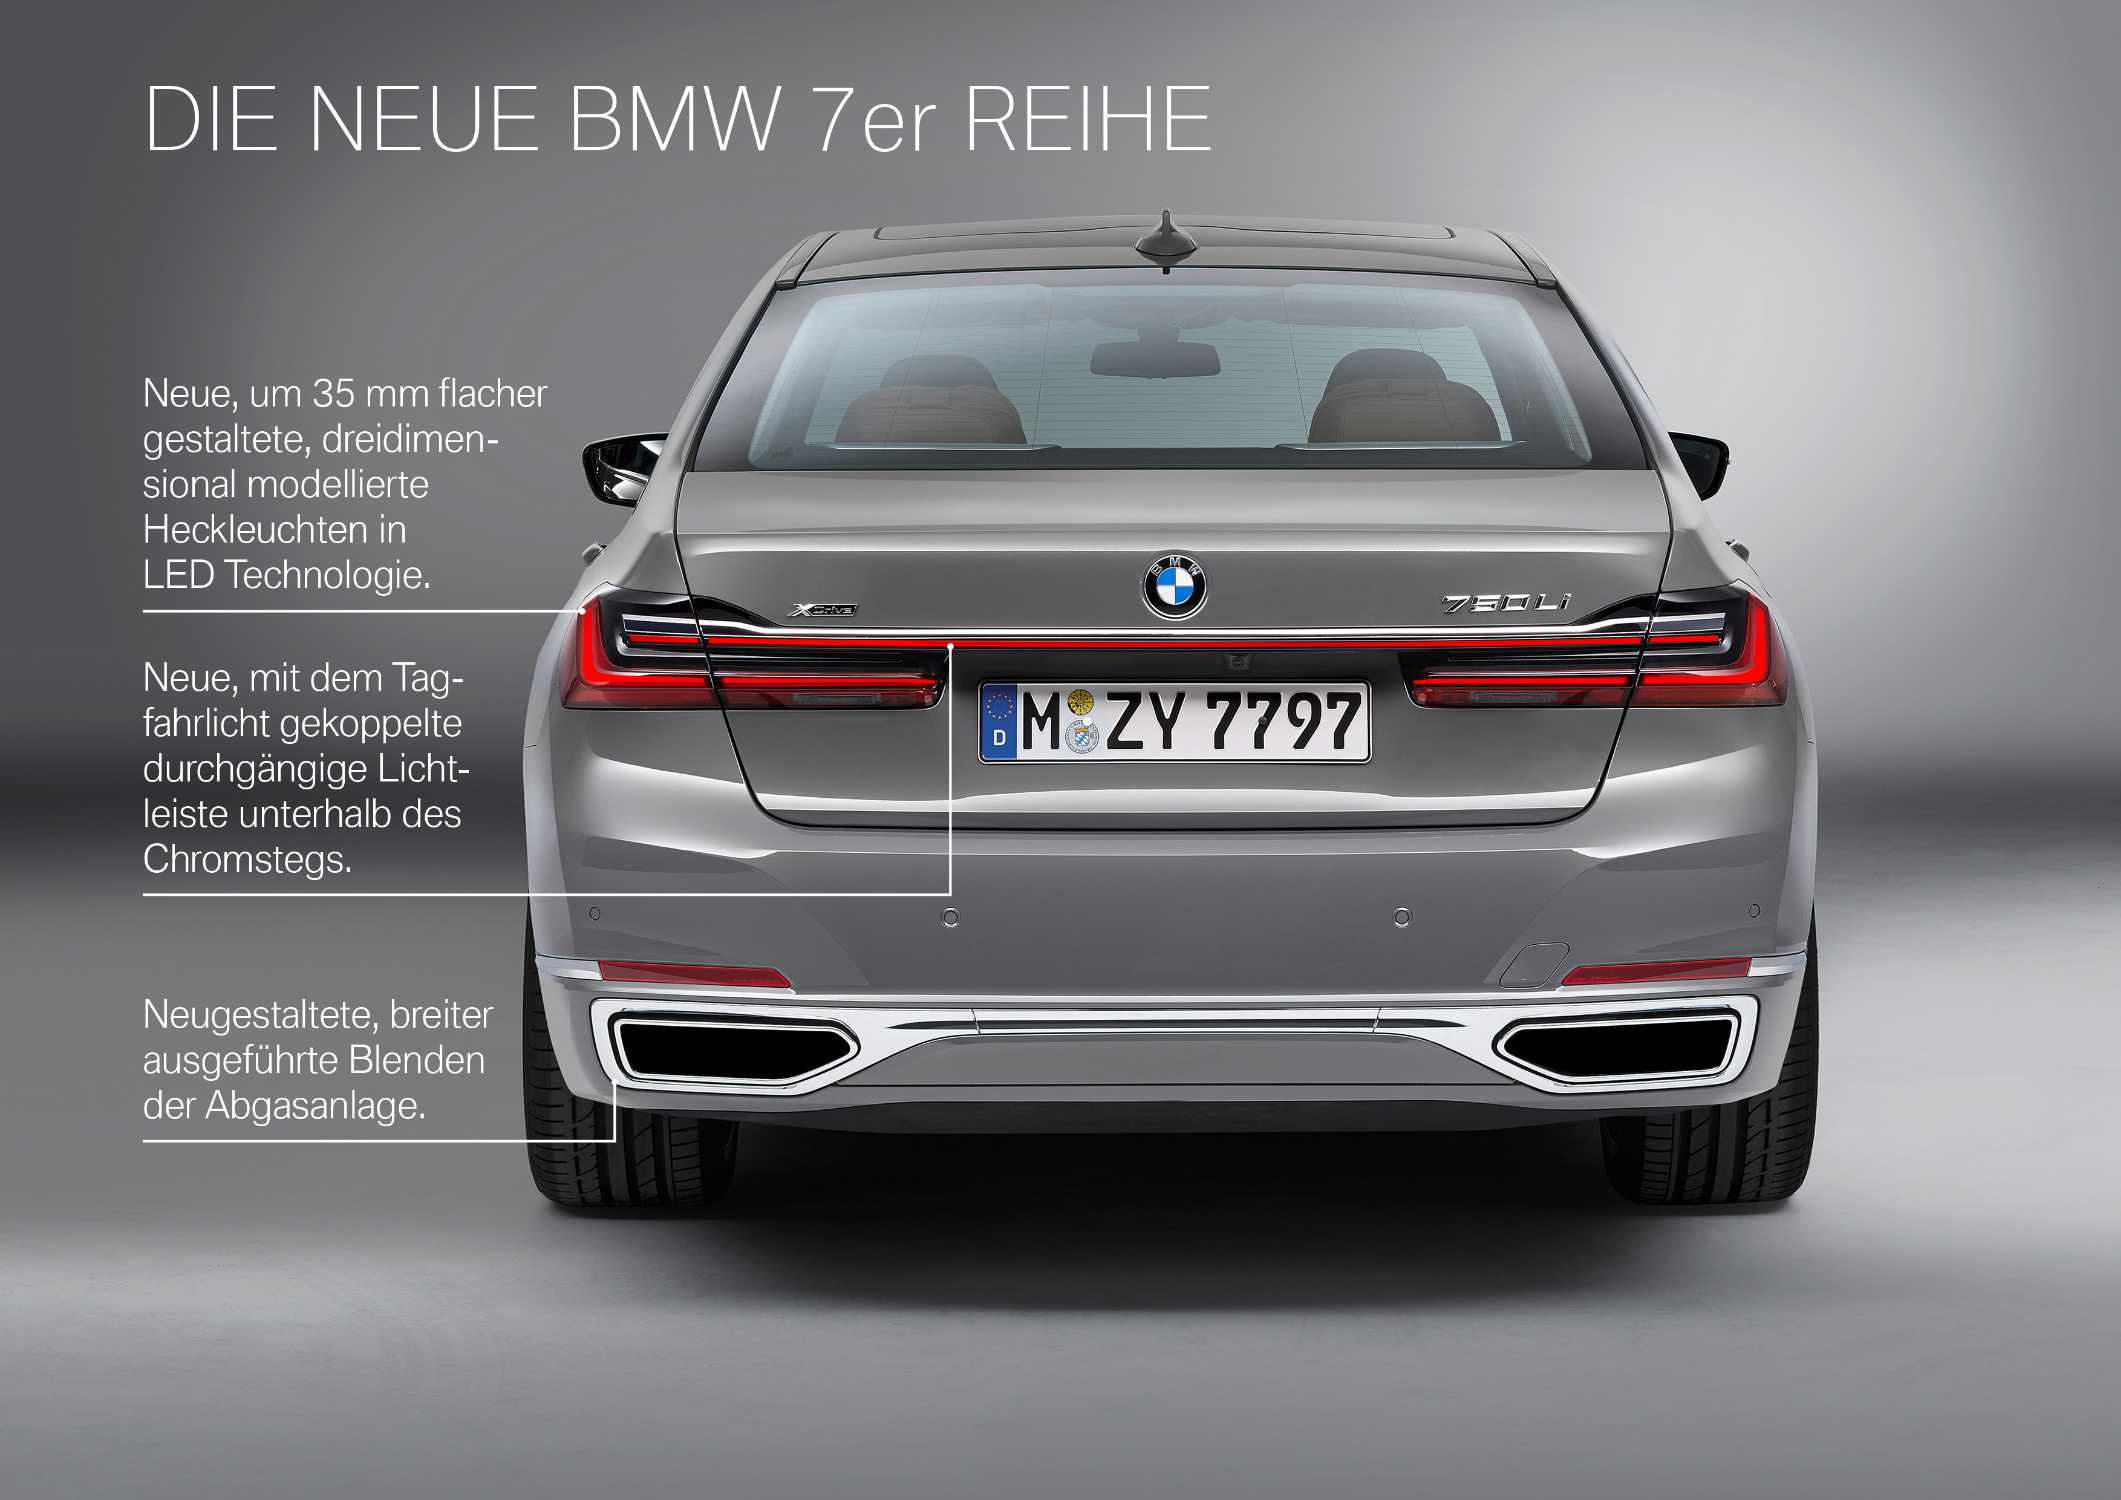 Die neue BMW 7er Reihe in Berninagrau Bernsteineffekt mit Leichtmetallrad Styling 777 und Exklusivleder „Nappa“ mit erweiterten Umfängen / Steppungen in Cognac / Schwarz (01/2019).